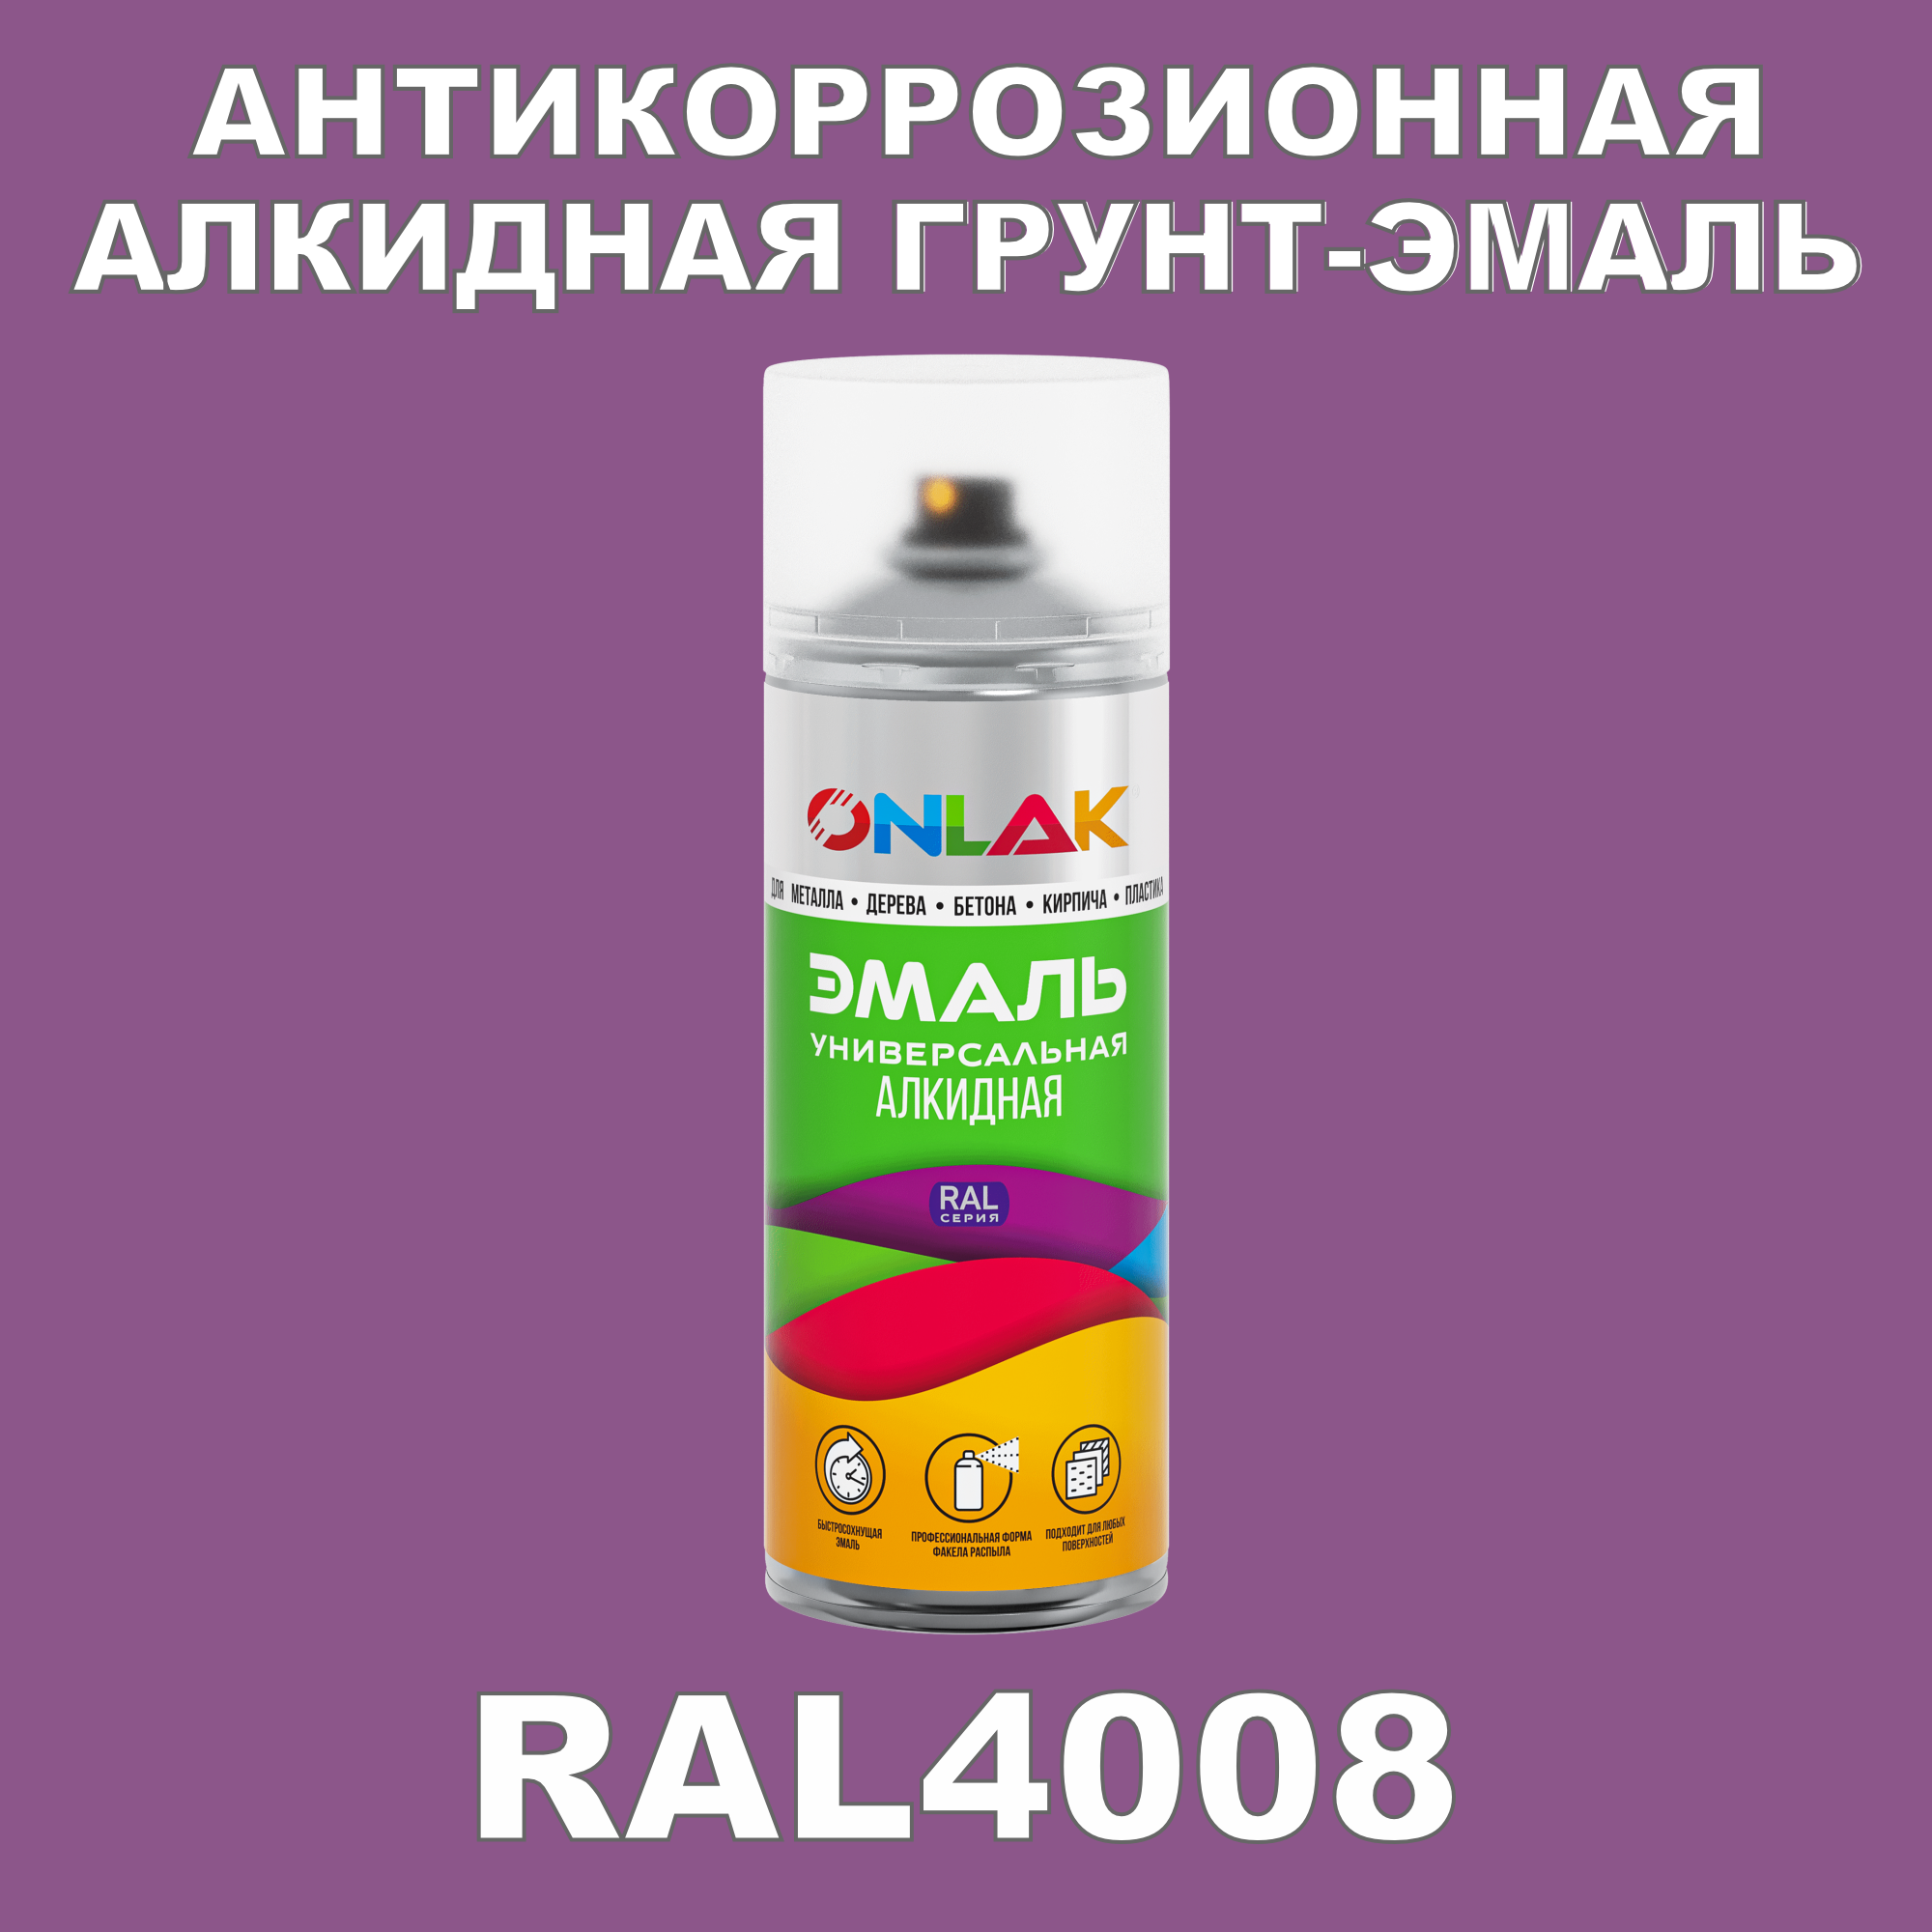 Антикоррозионная грунт-эмаль ONLAK RAL4008 полуматовая для металла и защиты от ржавчины